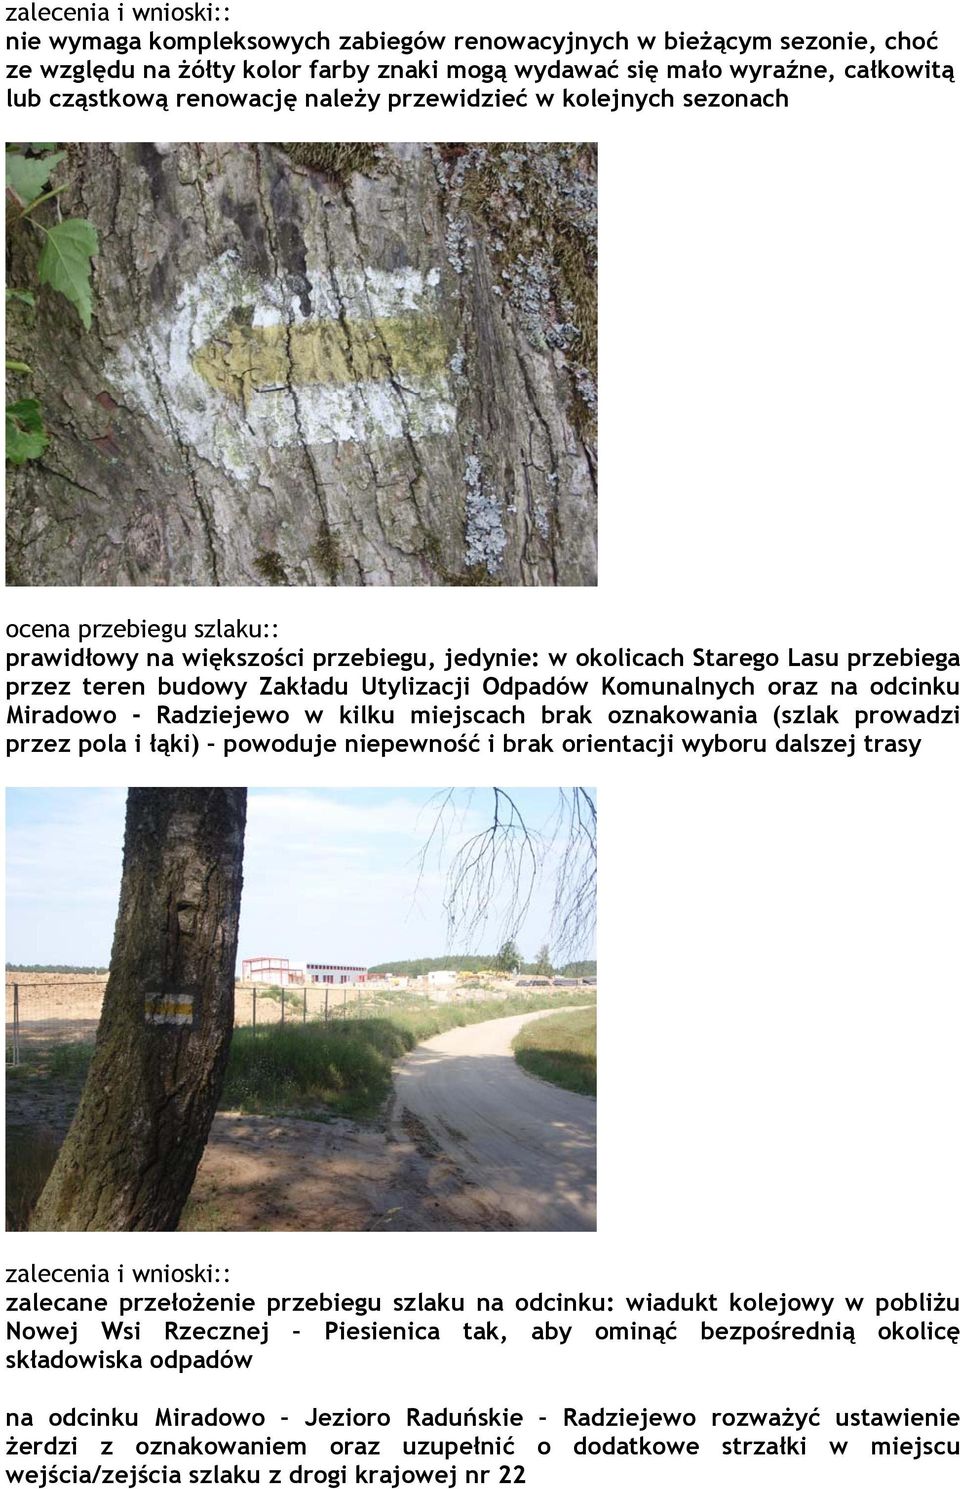 Komunalnych oraz na odcinku Miradowo - Radziejewo w kilku miejscach brak oznakowania (szlak prowadzi przez pola i łąki) powoduje niepewność i brak orientacji wyboru dalszej trasy zalecenia i